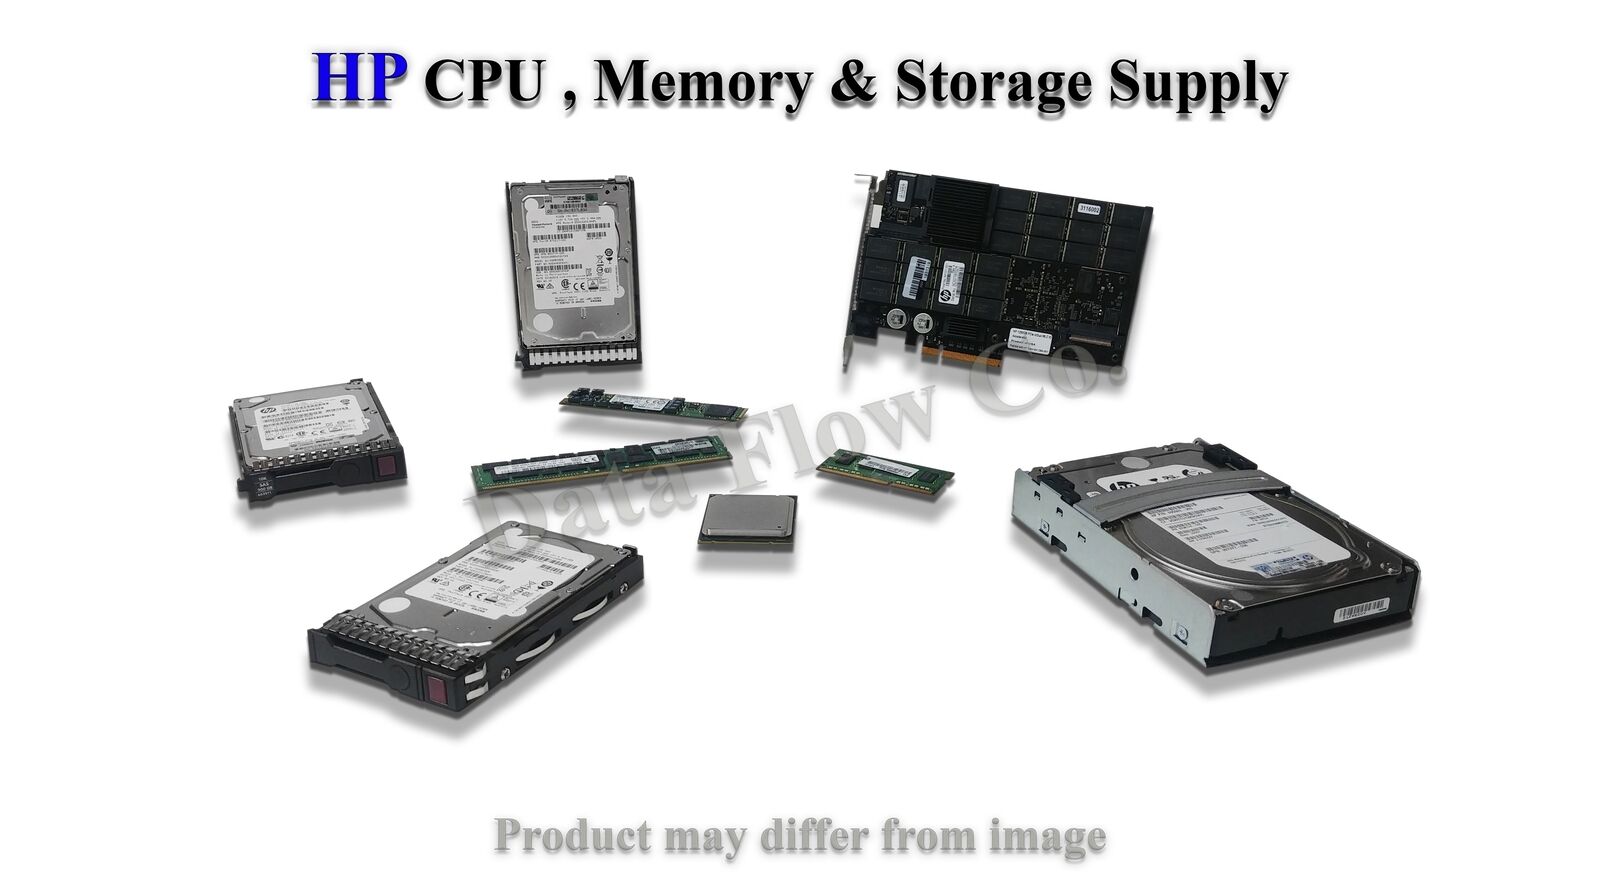 2.1GHz HP P02571-B21 Xeon Silver 4208 8-core For HP ProLiant DL360 Gen10